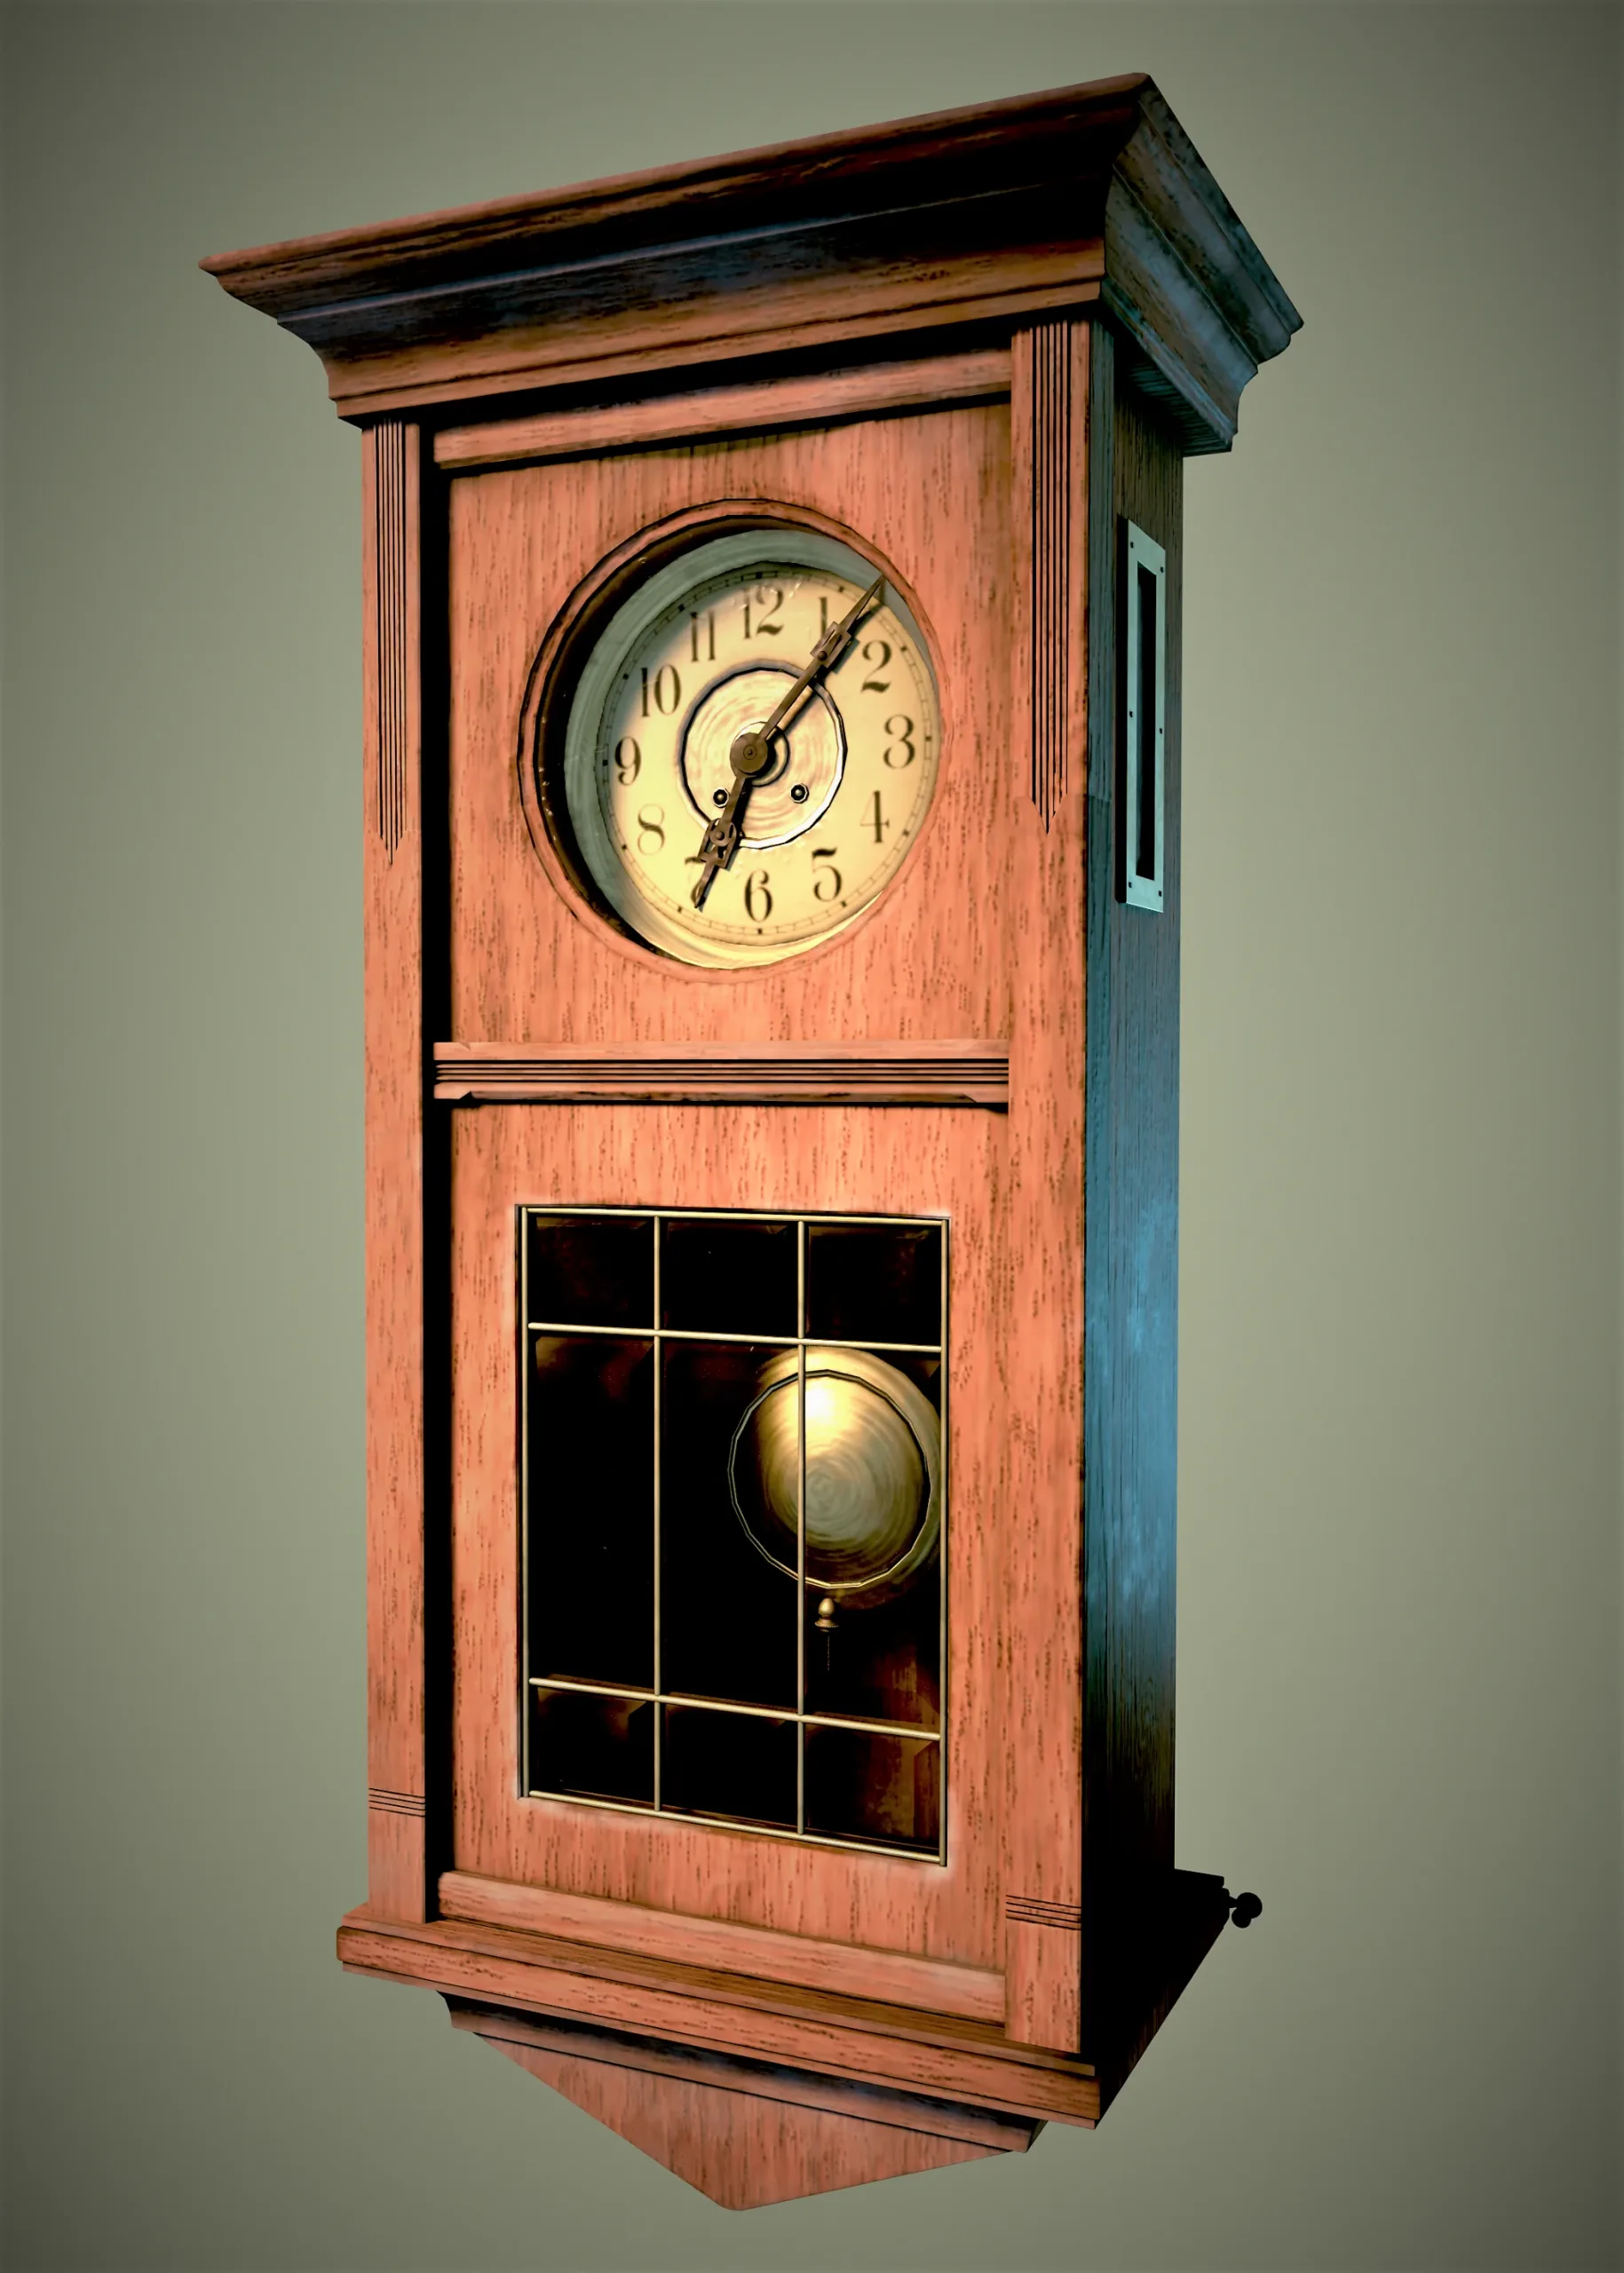 Retro clock by JAKSCH & Co. Riga, Russ Emp, 1901